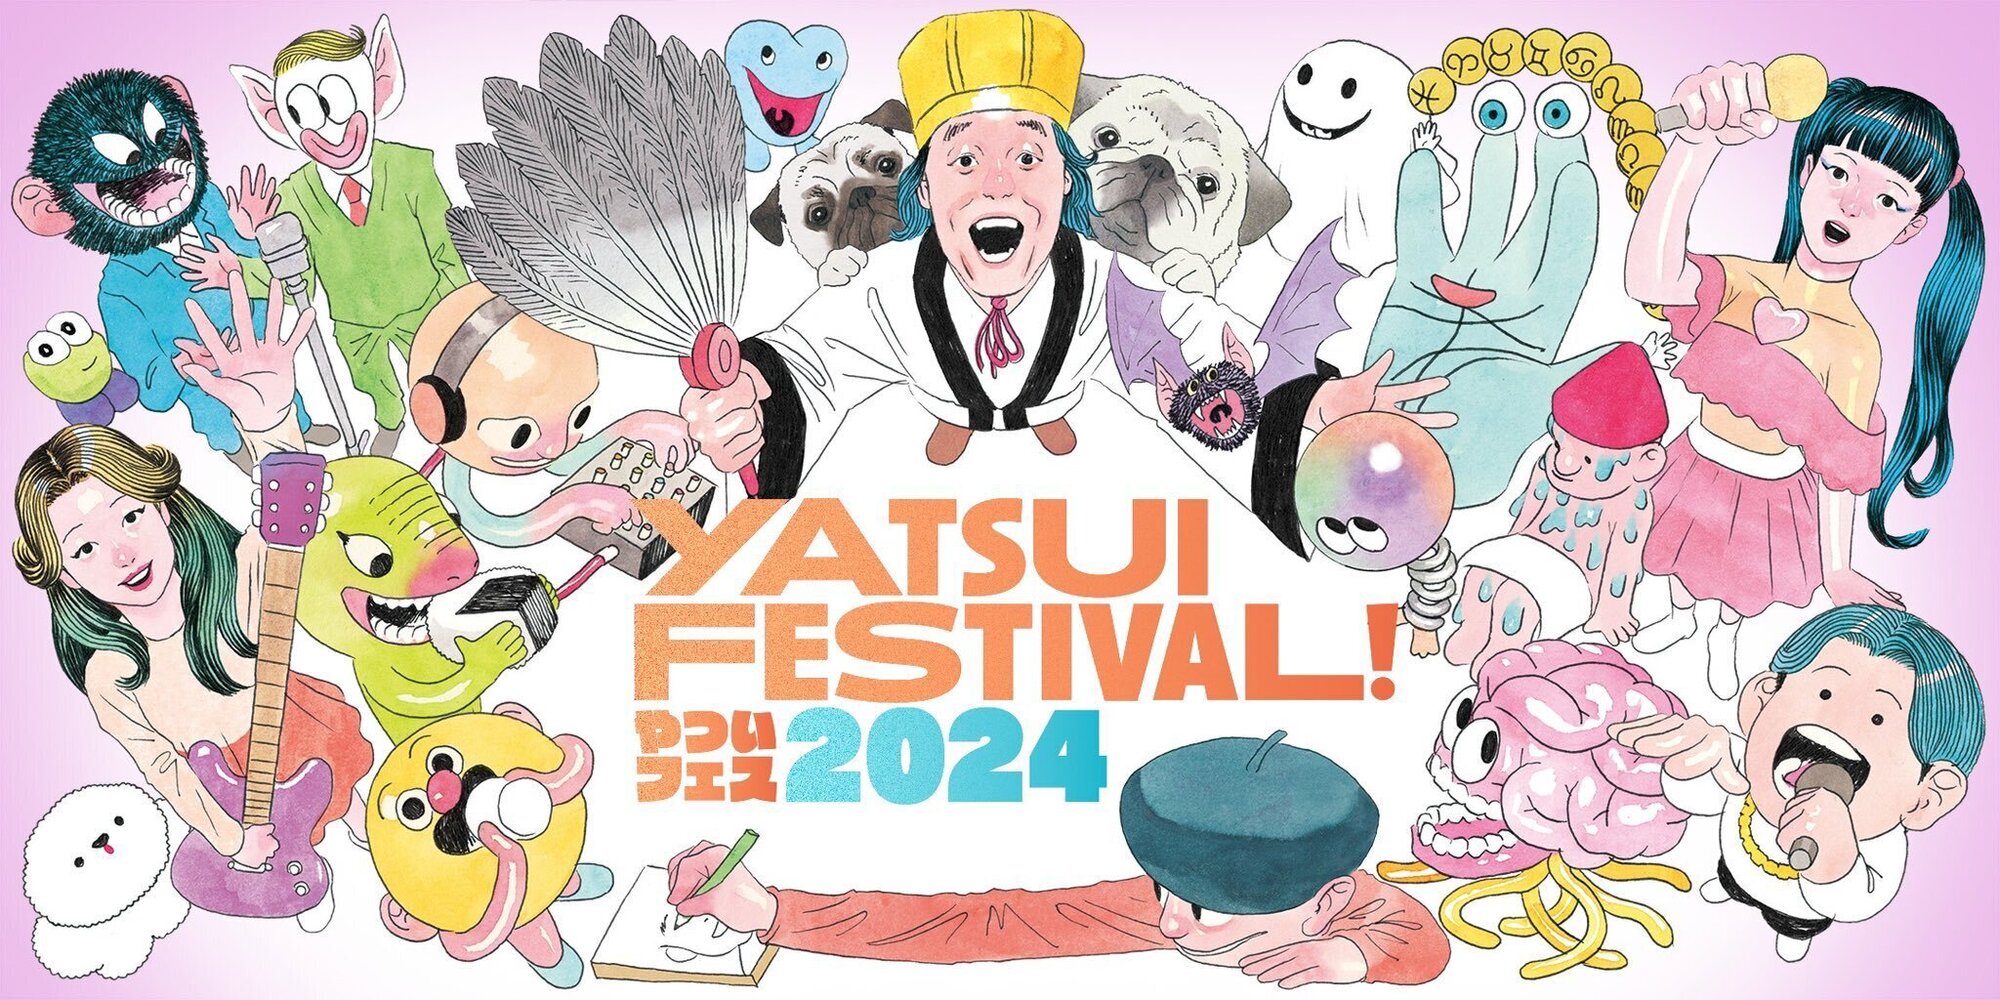 6月15日(土)「YATSUI FESTIVAL! 2024」